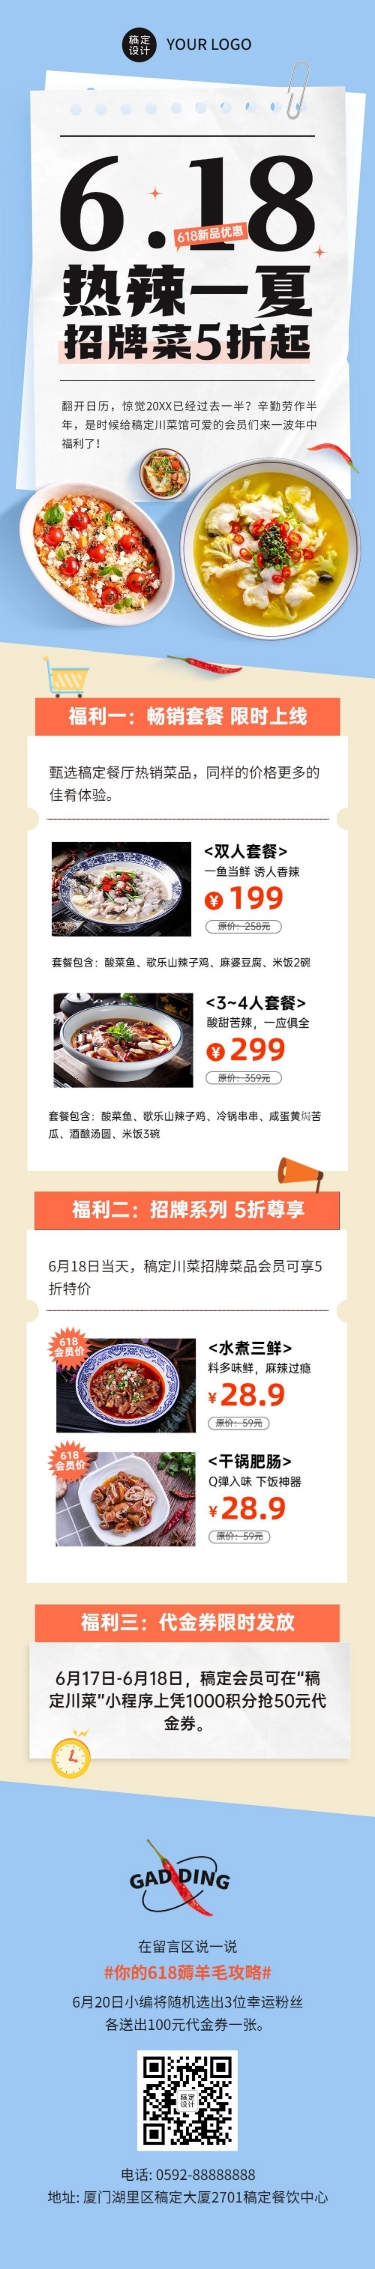 餐饮618川菜馆产品营销文章长图预览效果